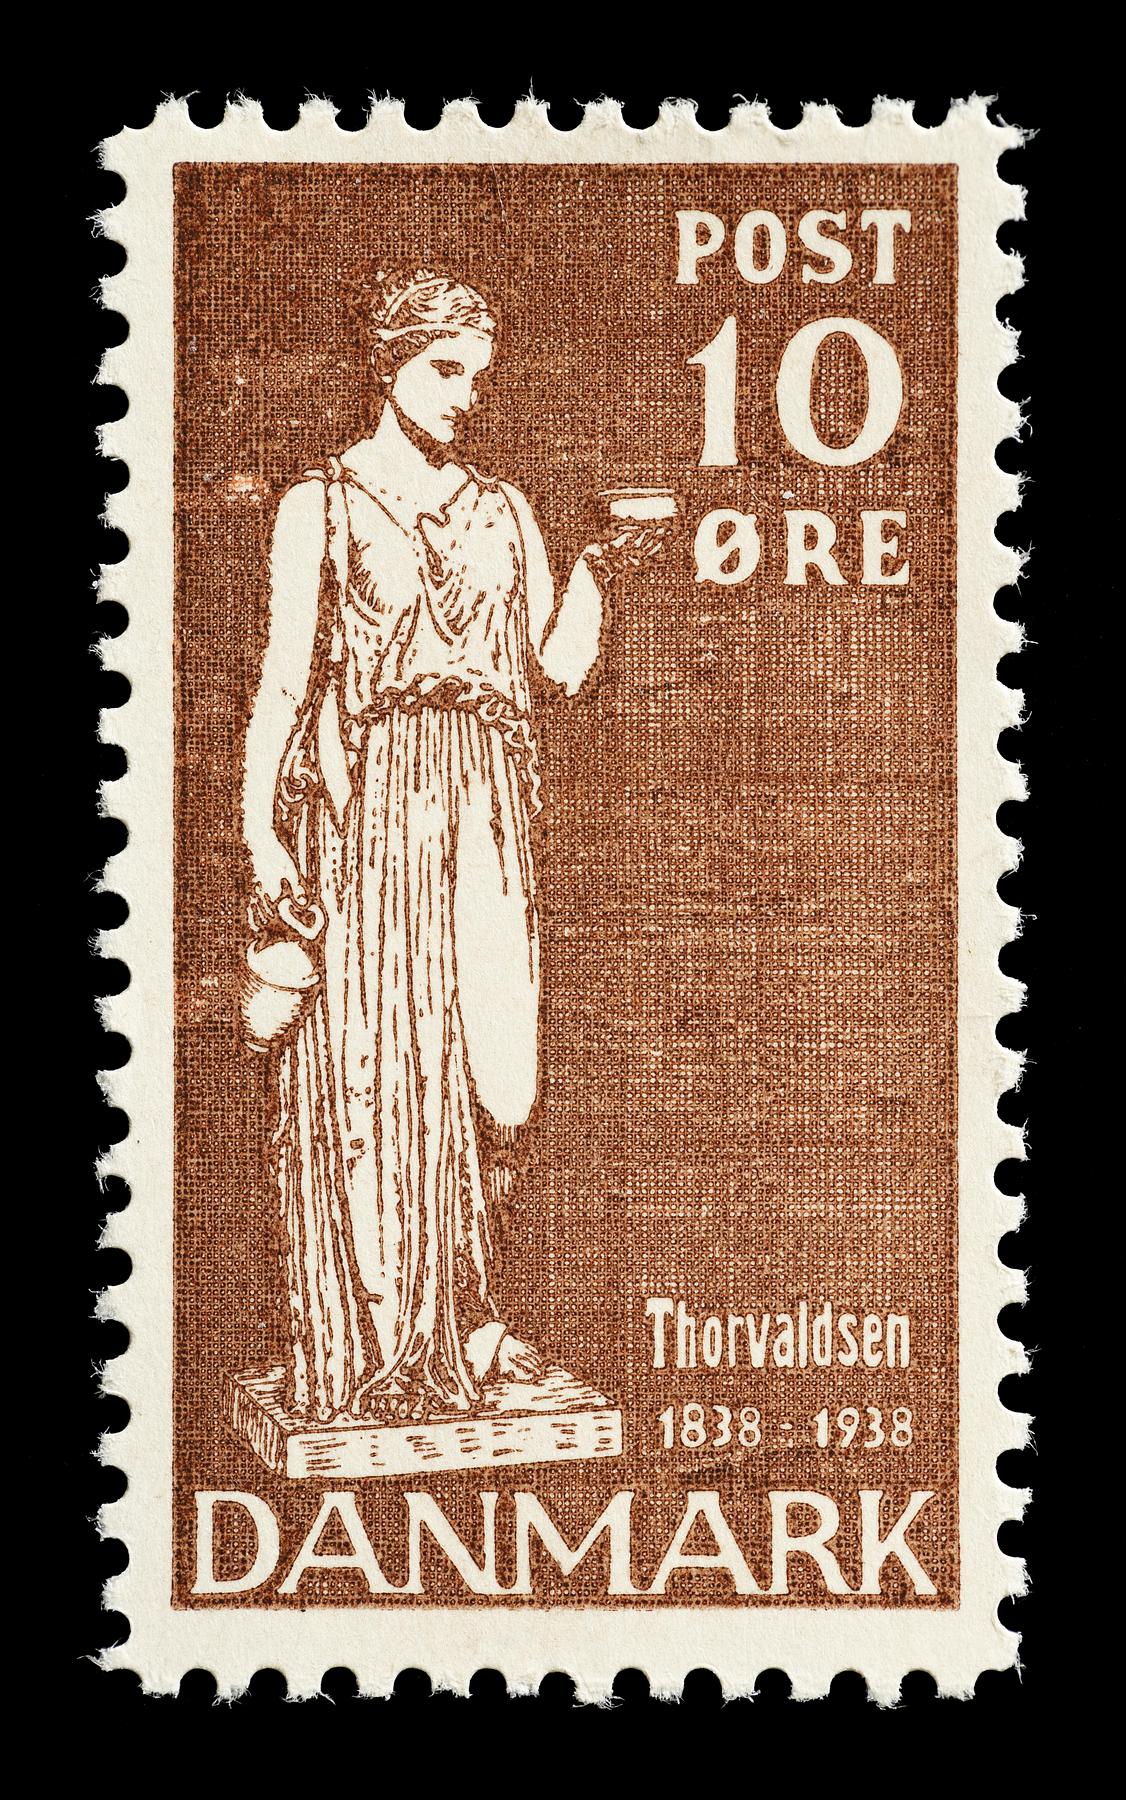 Prøvetryk af udkast til et dansk frimærke med Thorvaldsens Hebe, E2341,18